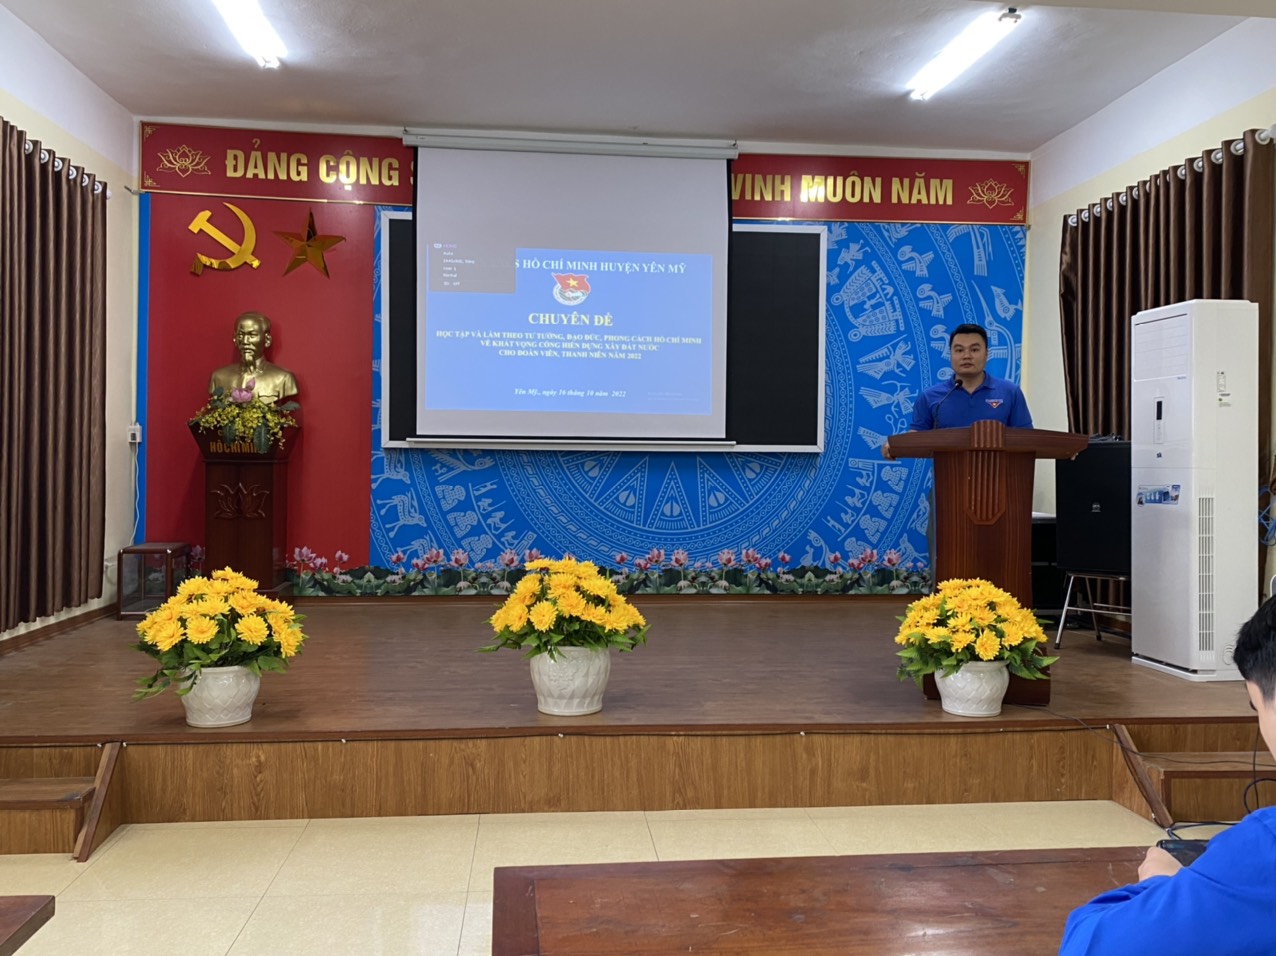 Huyện đoàn Yên Mỹ tổ chức "học tập và làm theo tư tưởng đạo đức, phong cách Hồ Chí Minh về khát vọng cống hiến xây dựng đất nước" cho đoàn viên thanh niên năm 2022